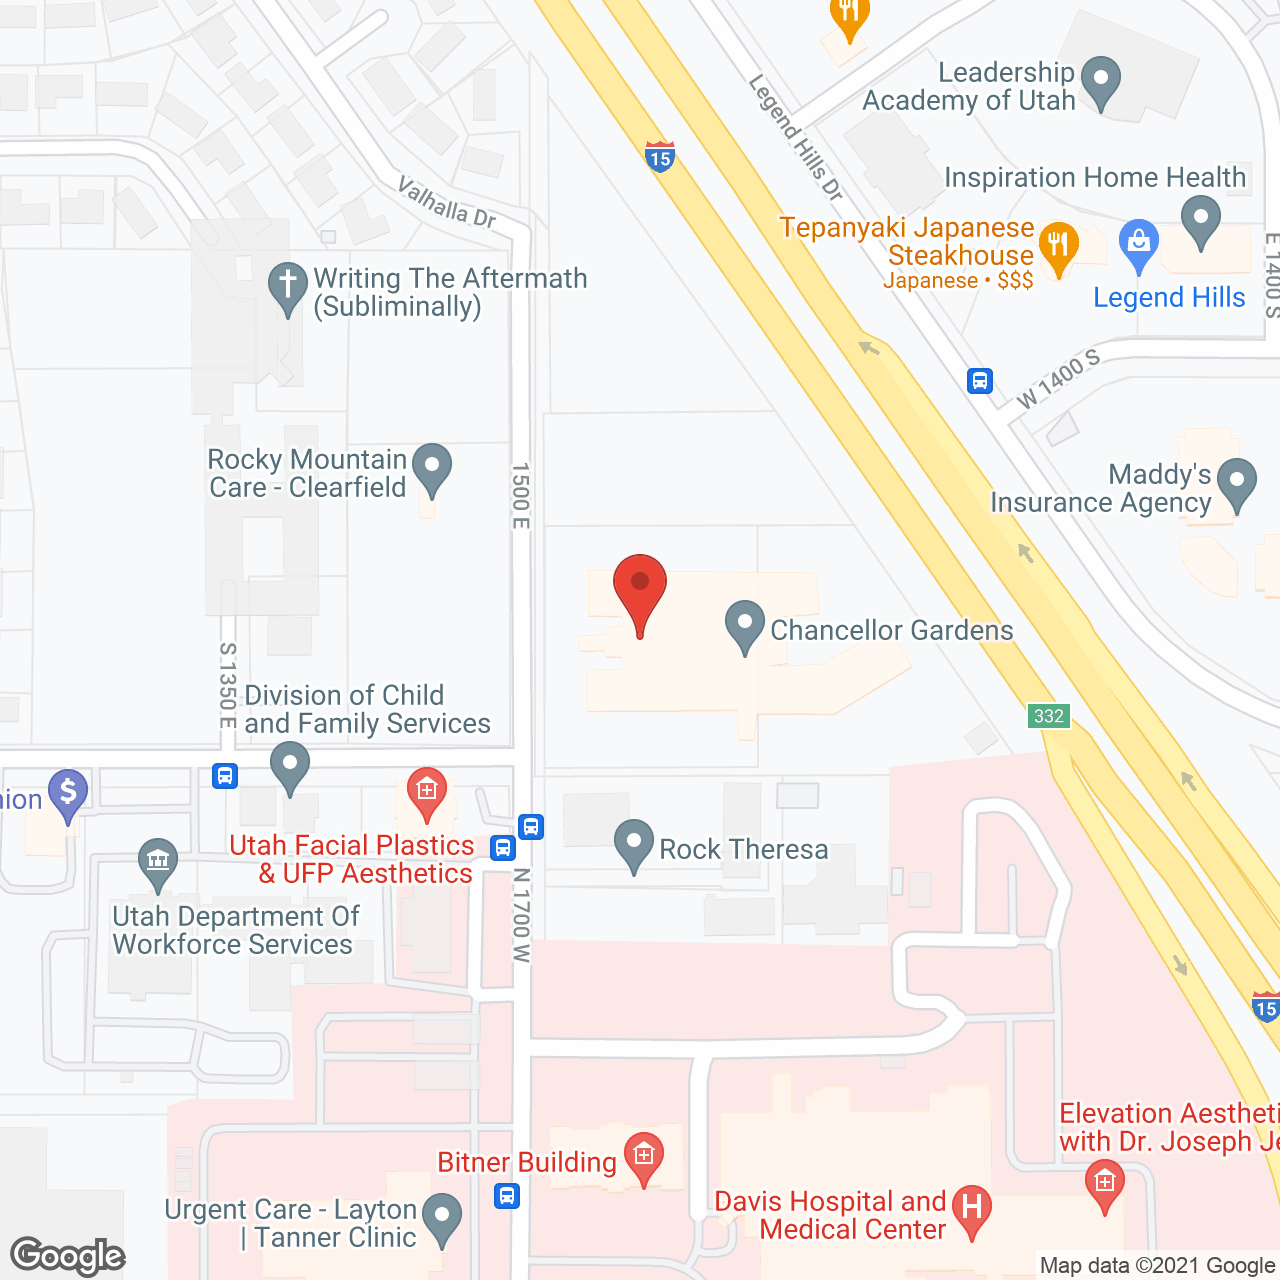 Chancellor Gardens in google map